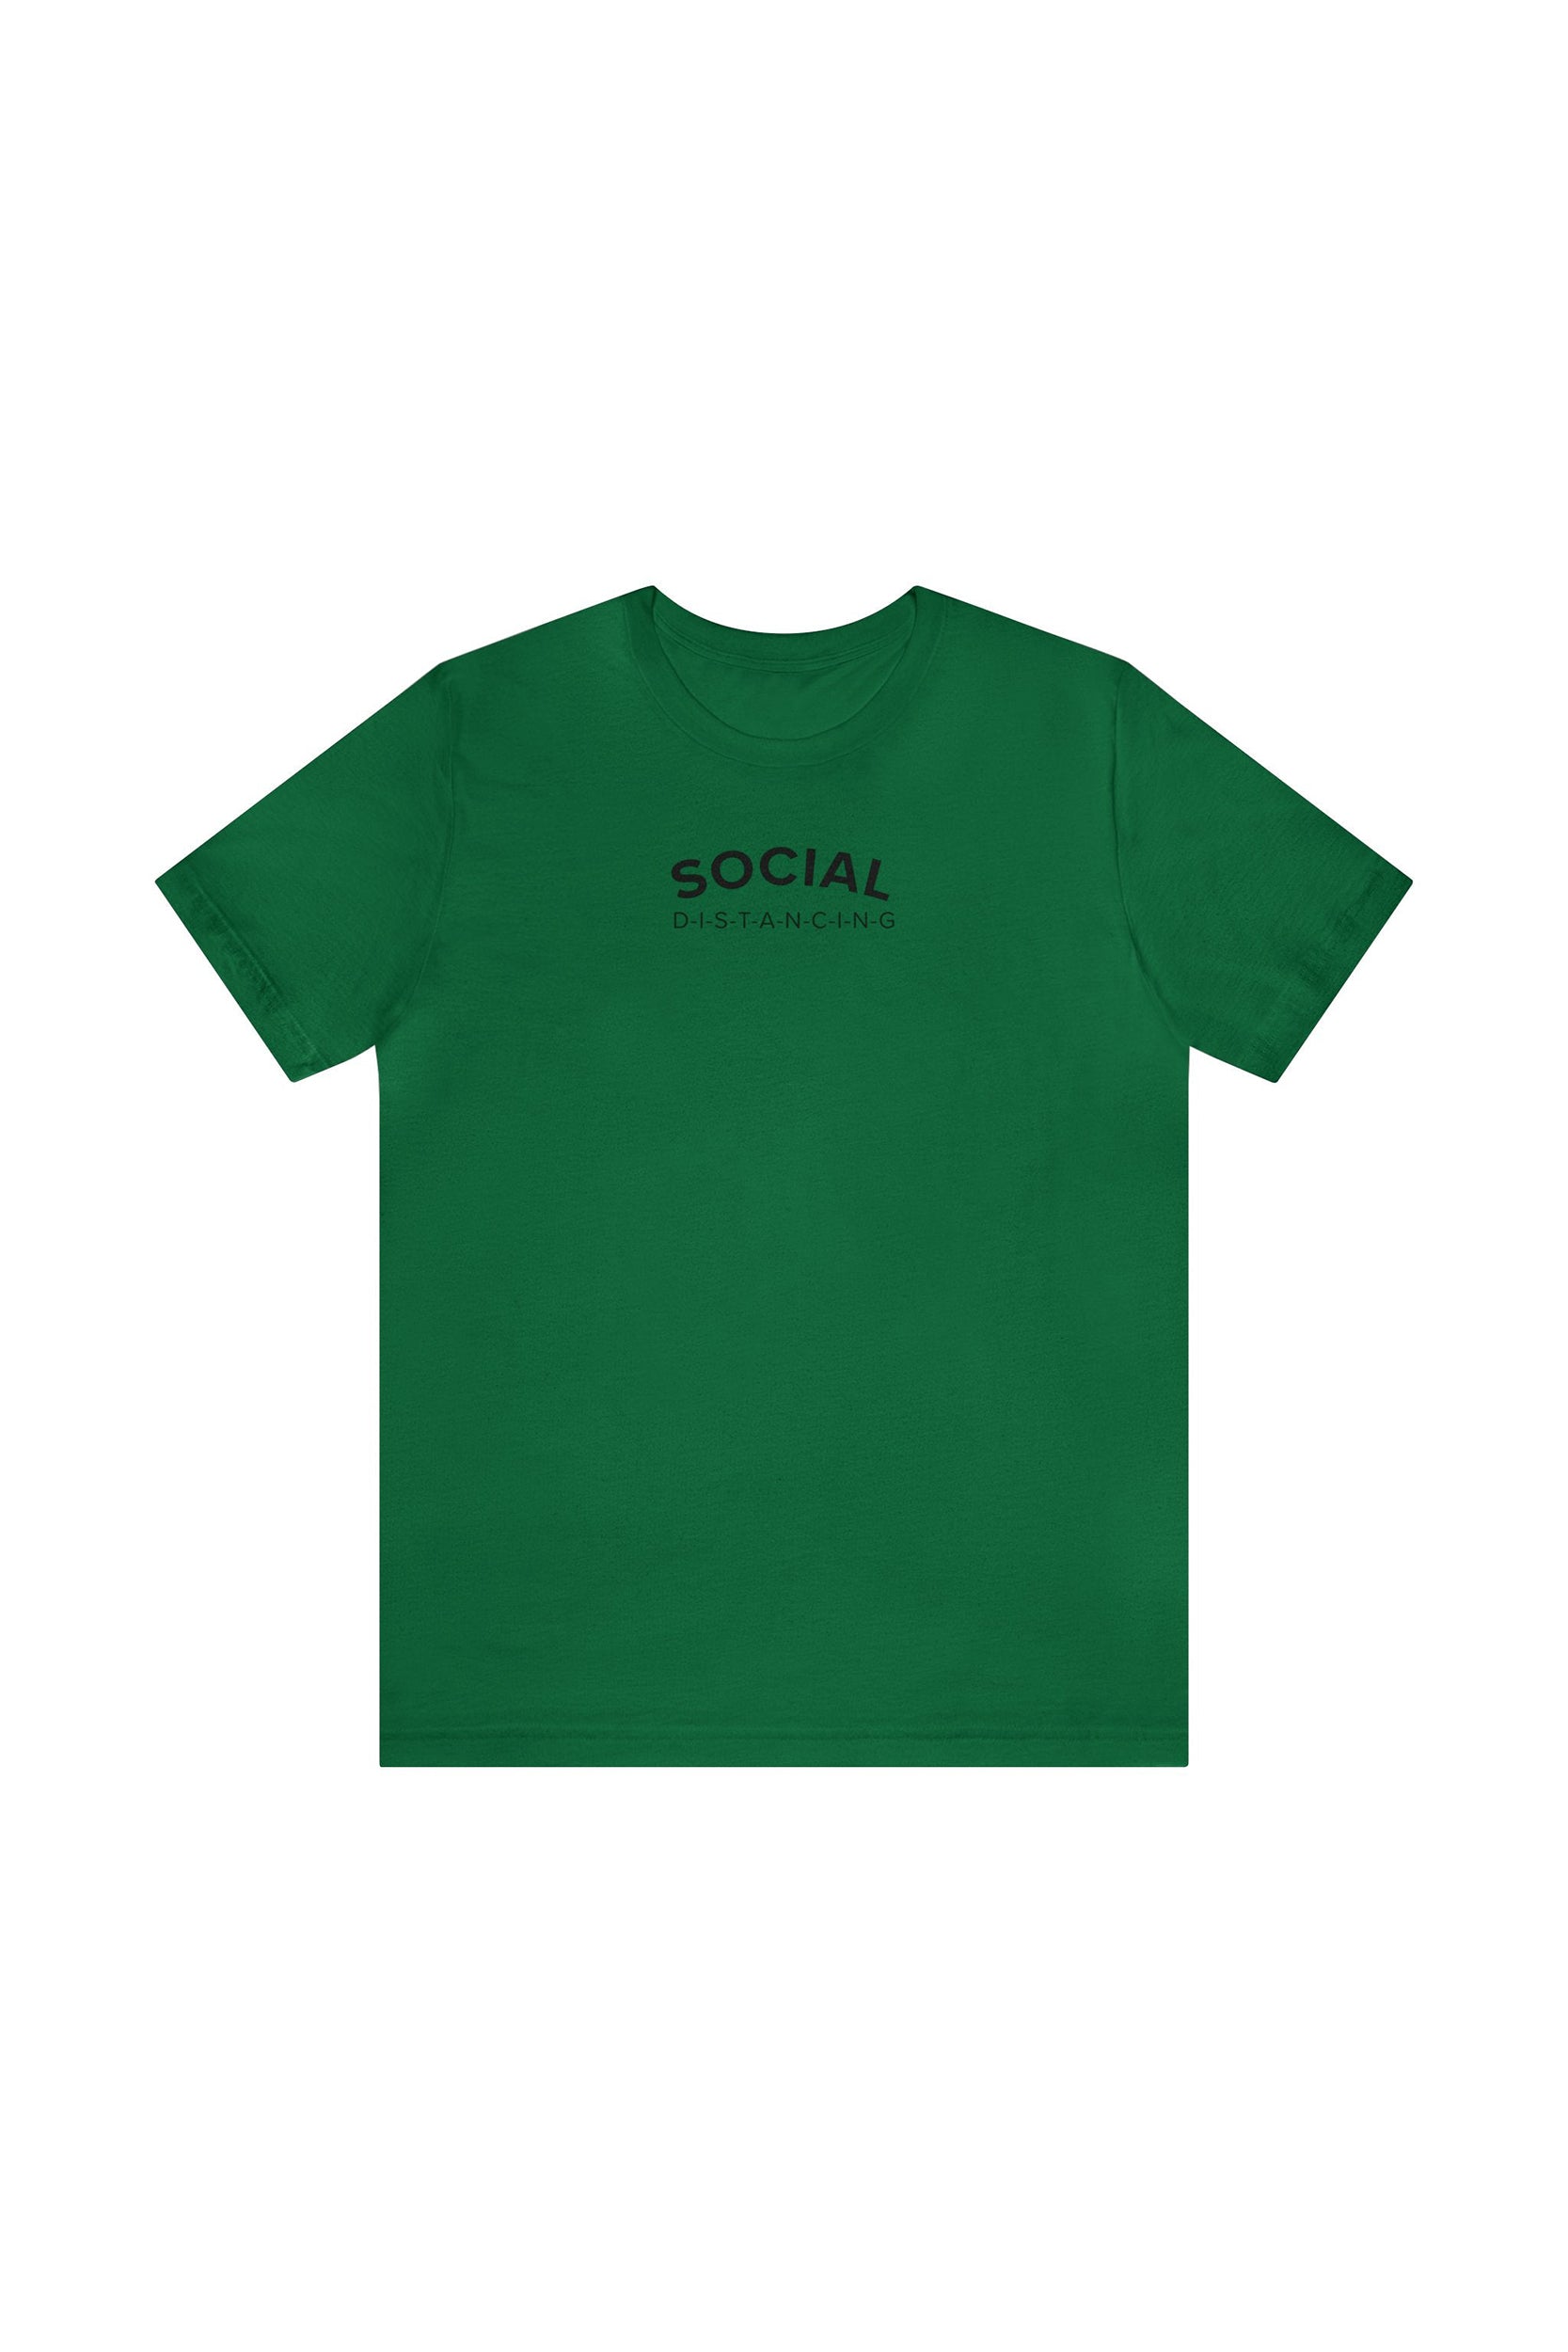 "Social D-I-S-T-A-N-C-I-N-G" T-Shirt